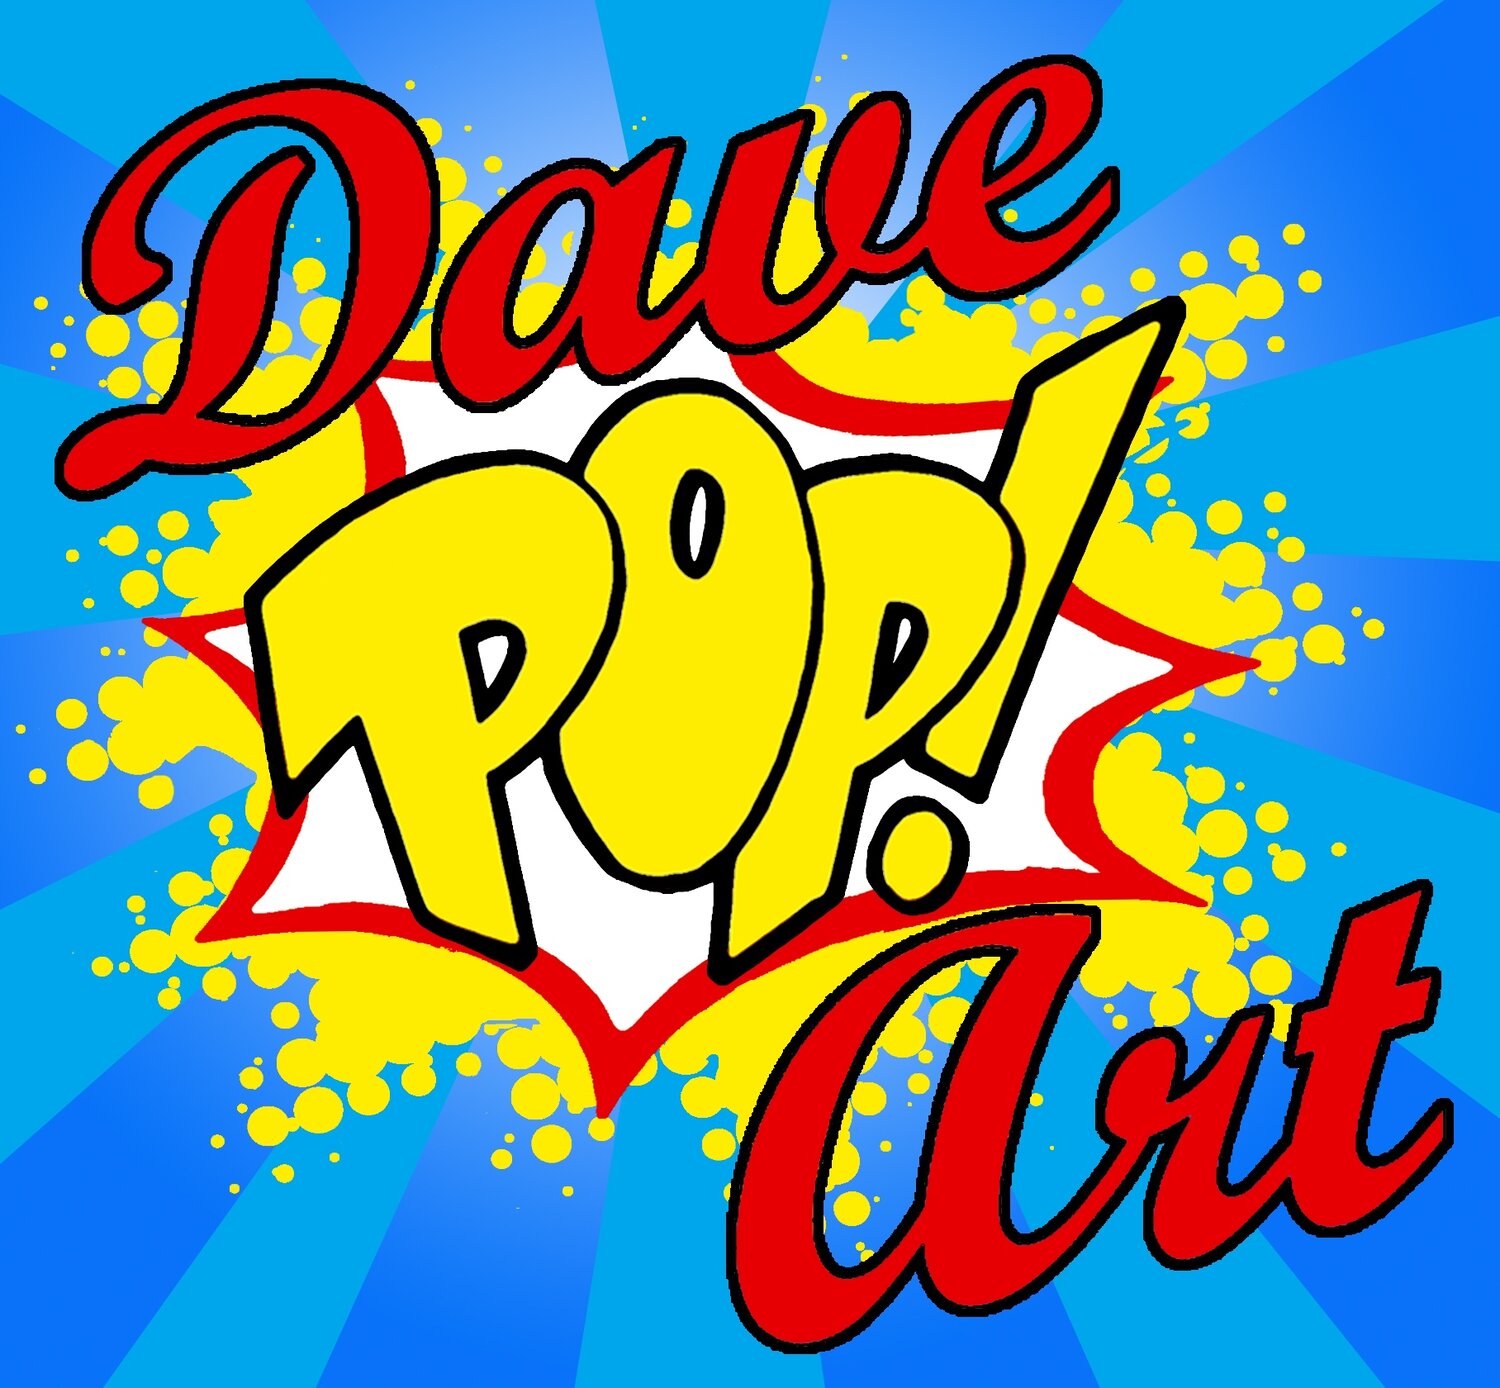 Dave Pop! Art